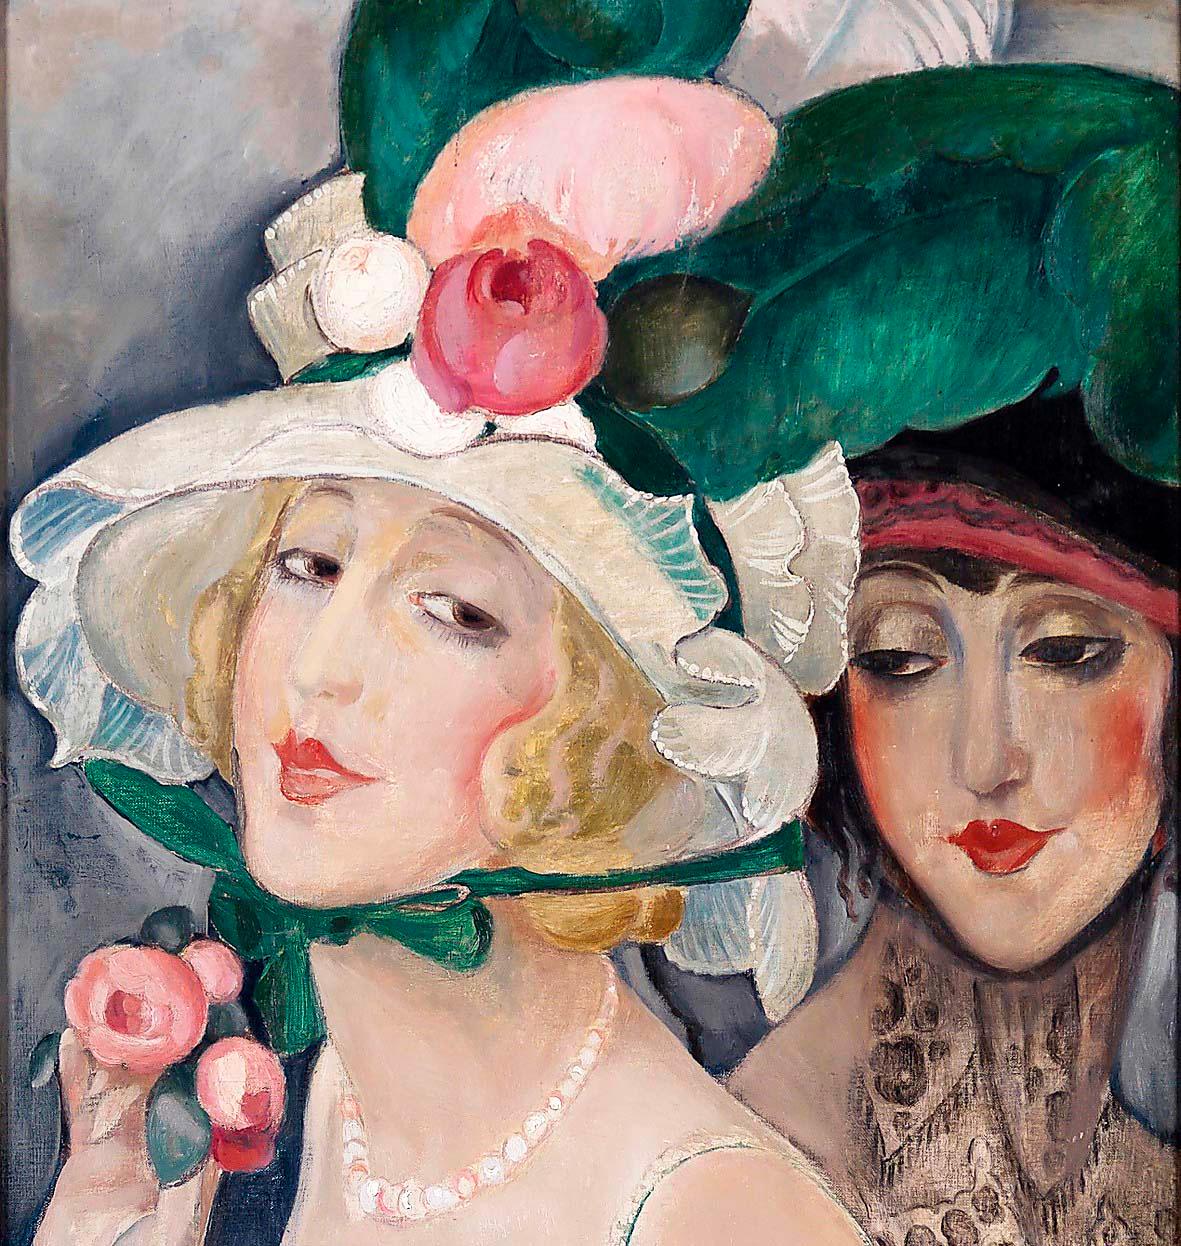 Gerda Wegener, ”Två kokotter”, 1920 (bilden är beskuren).